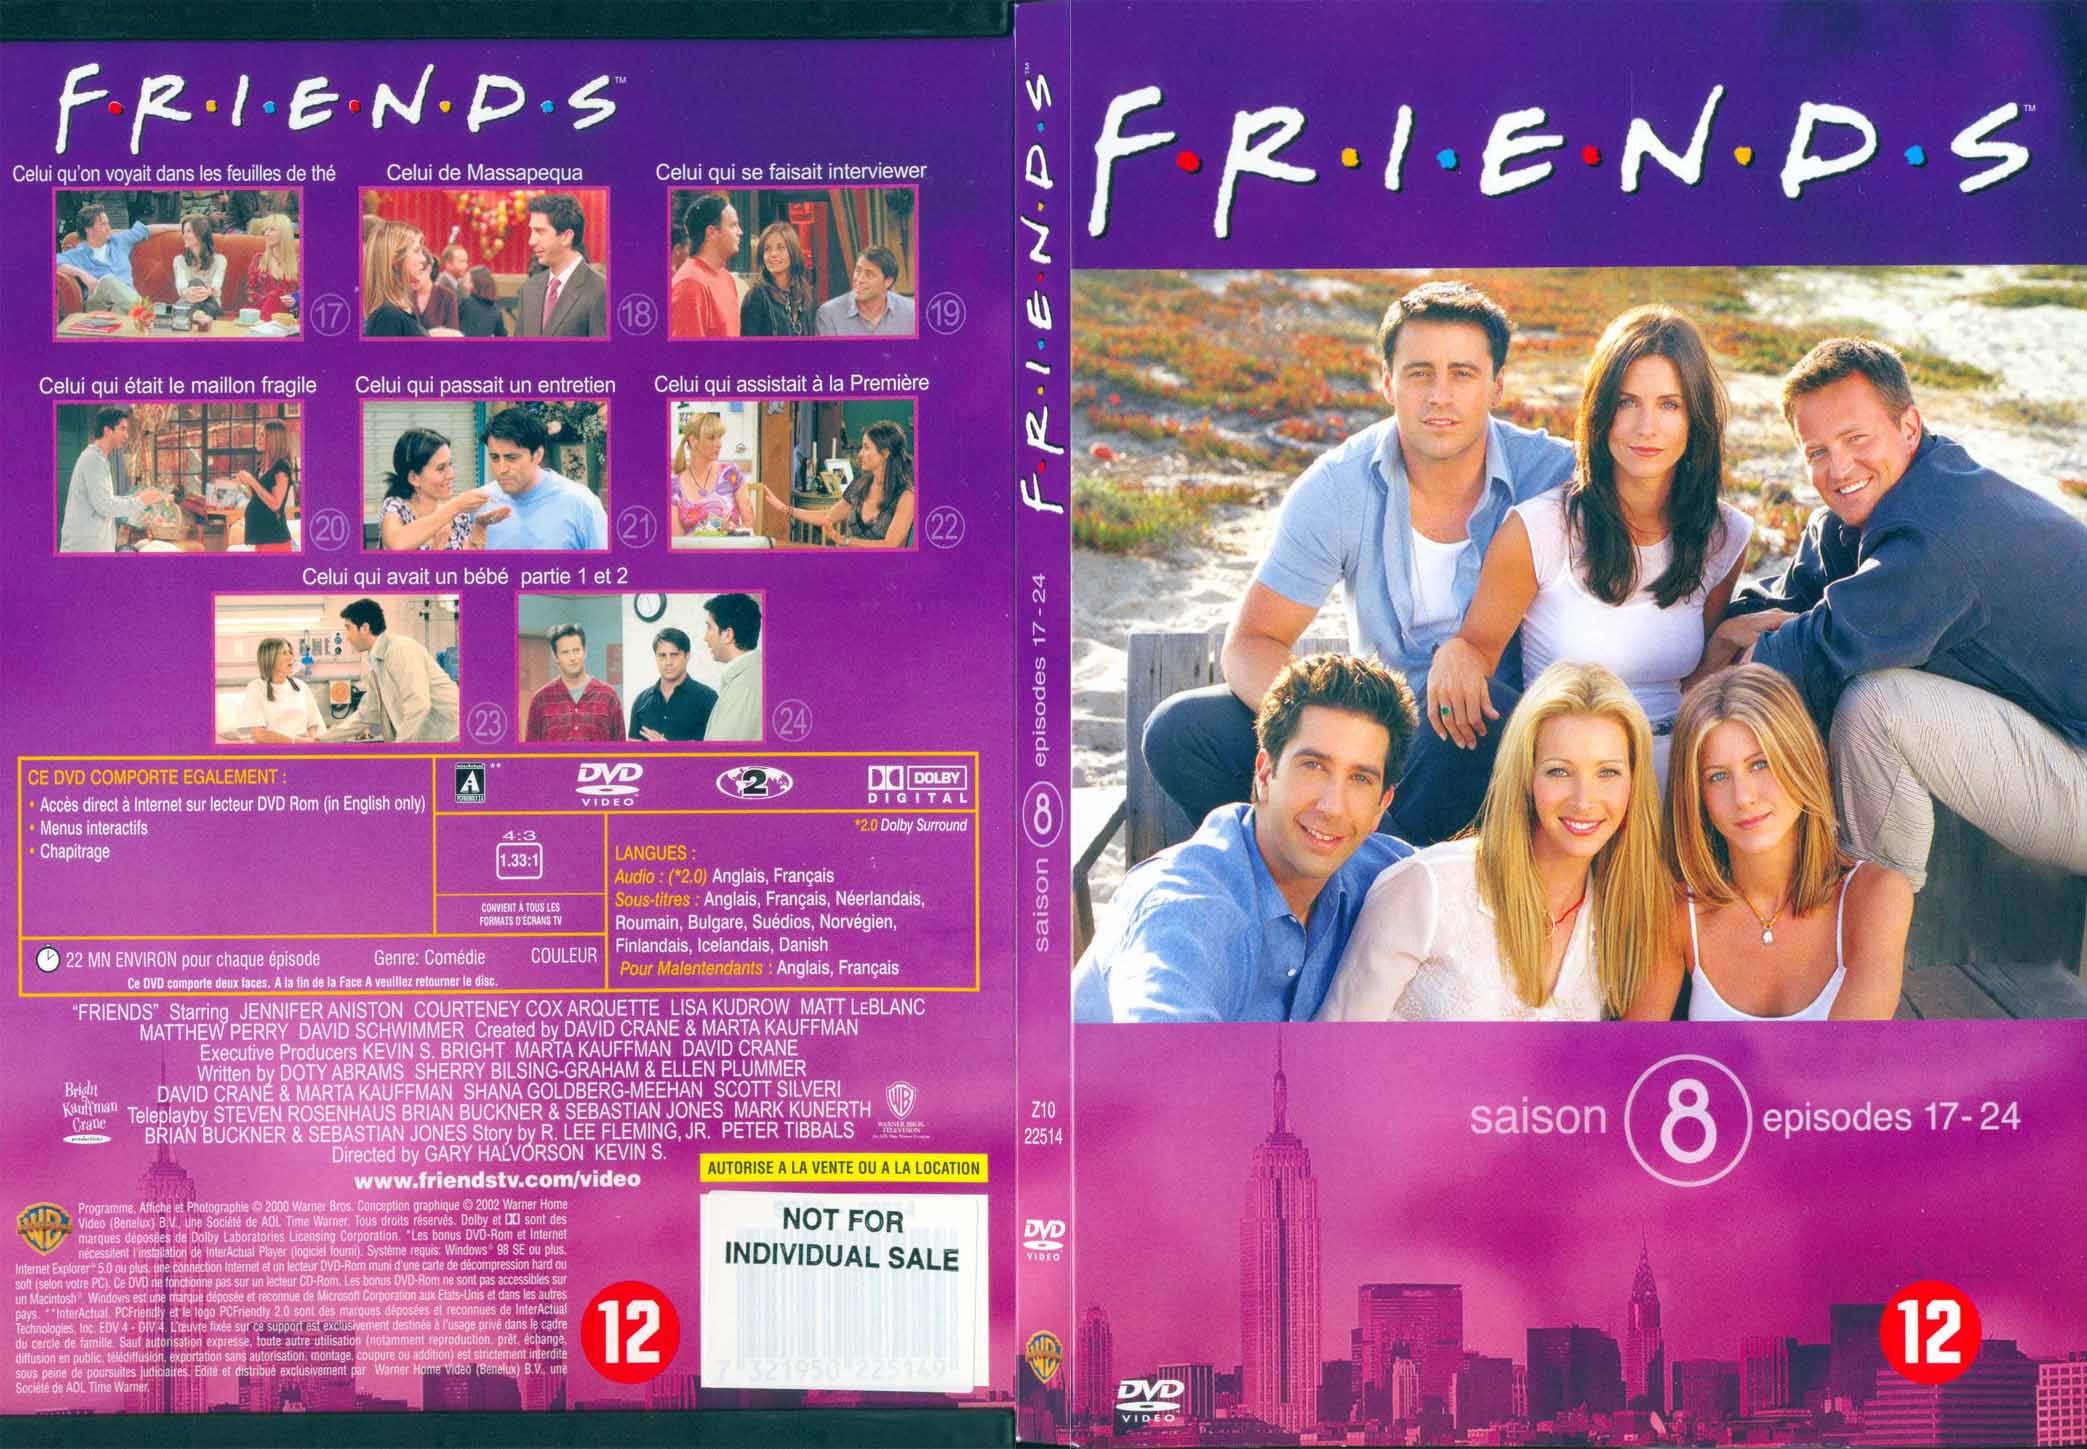 Jaquette DVD Friends saison 8 dvd 3 - SLIM